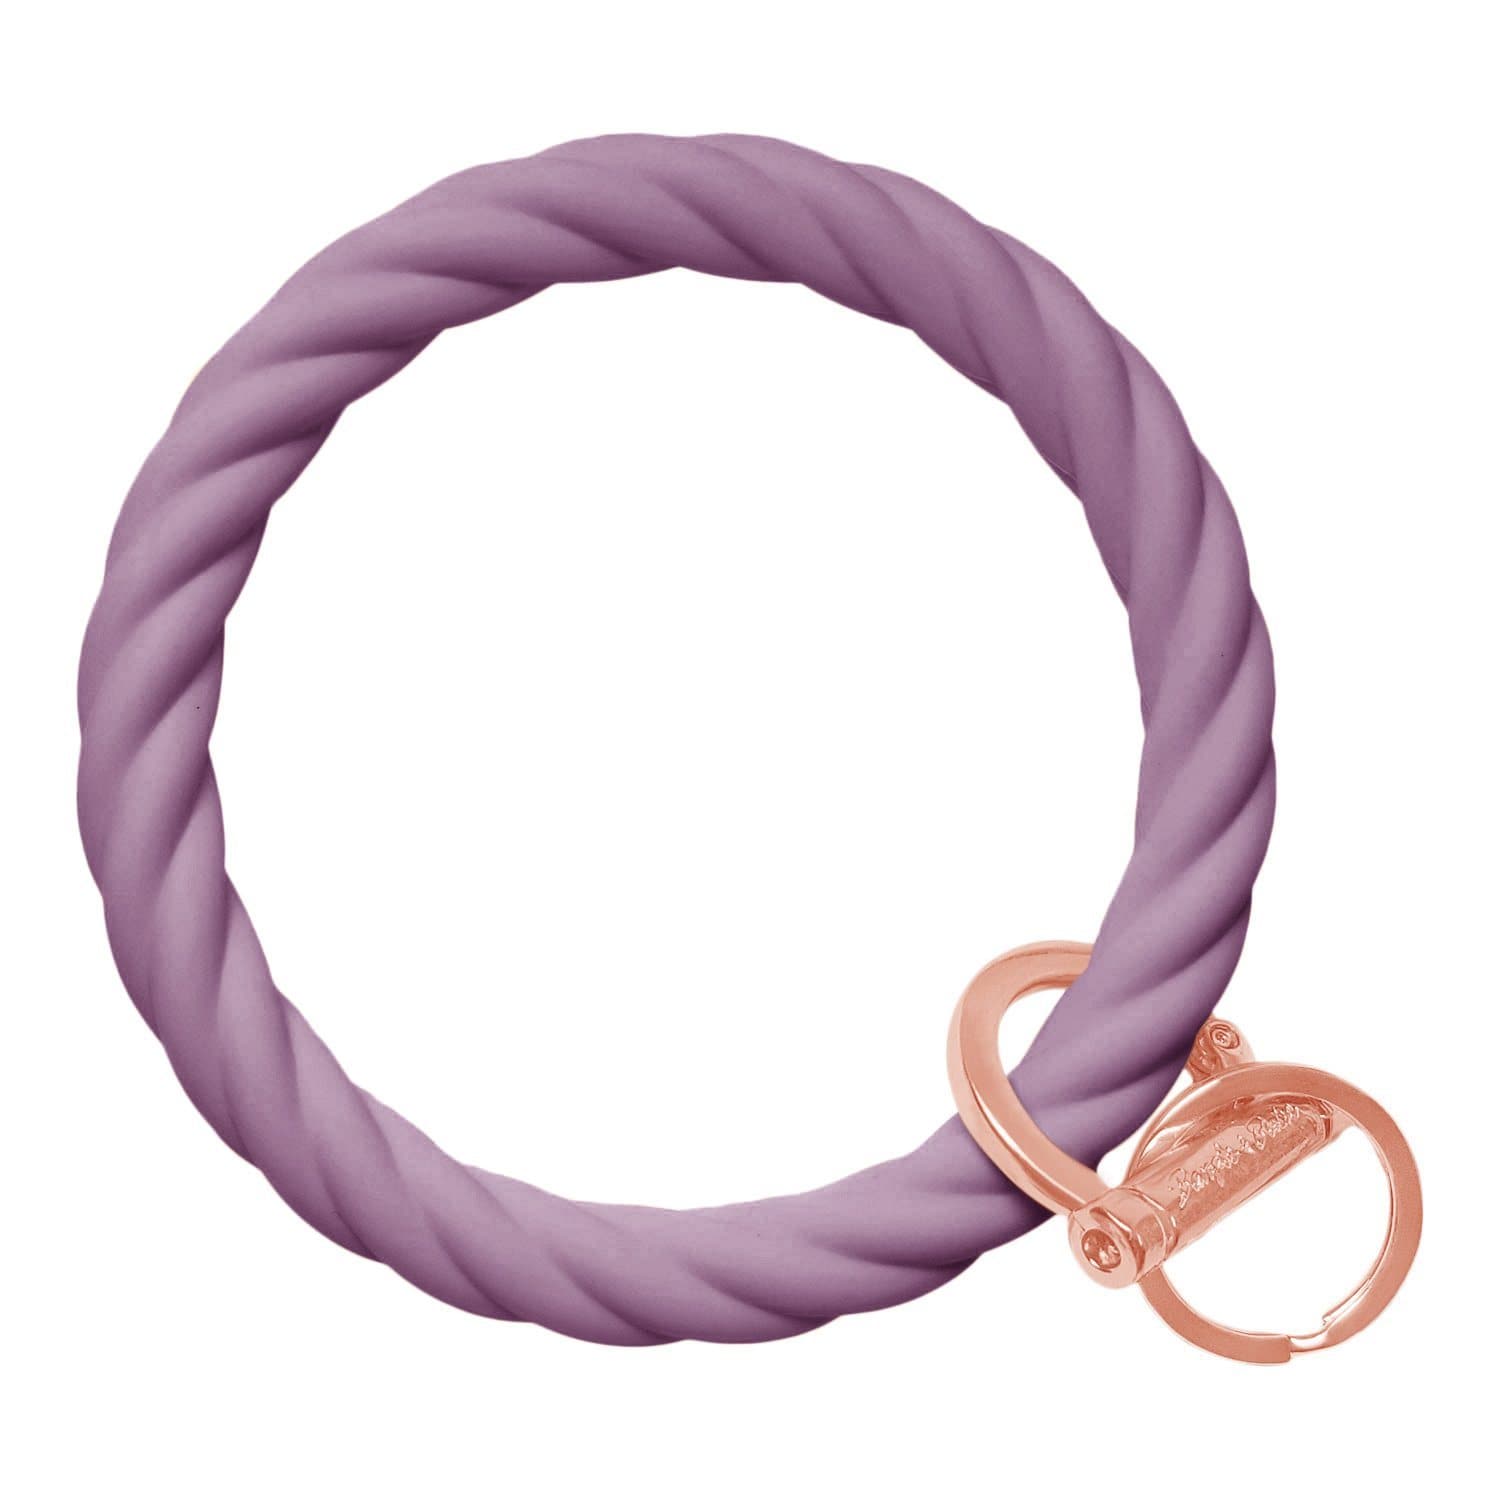 Twisted Bangle & Babe Bracelet Key Ring Twist – Wisteria Rose Gold 